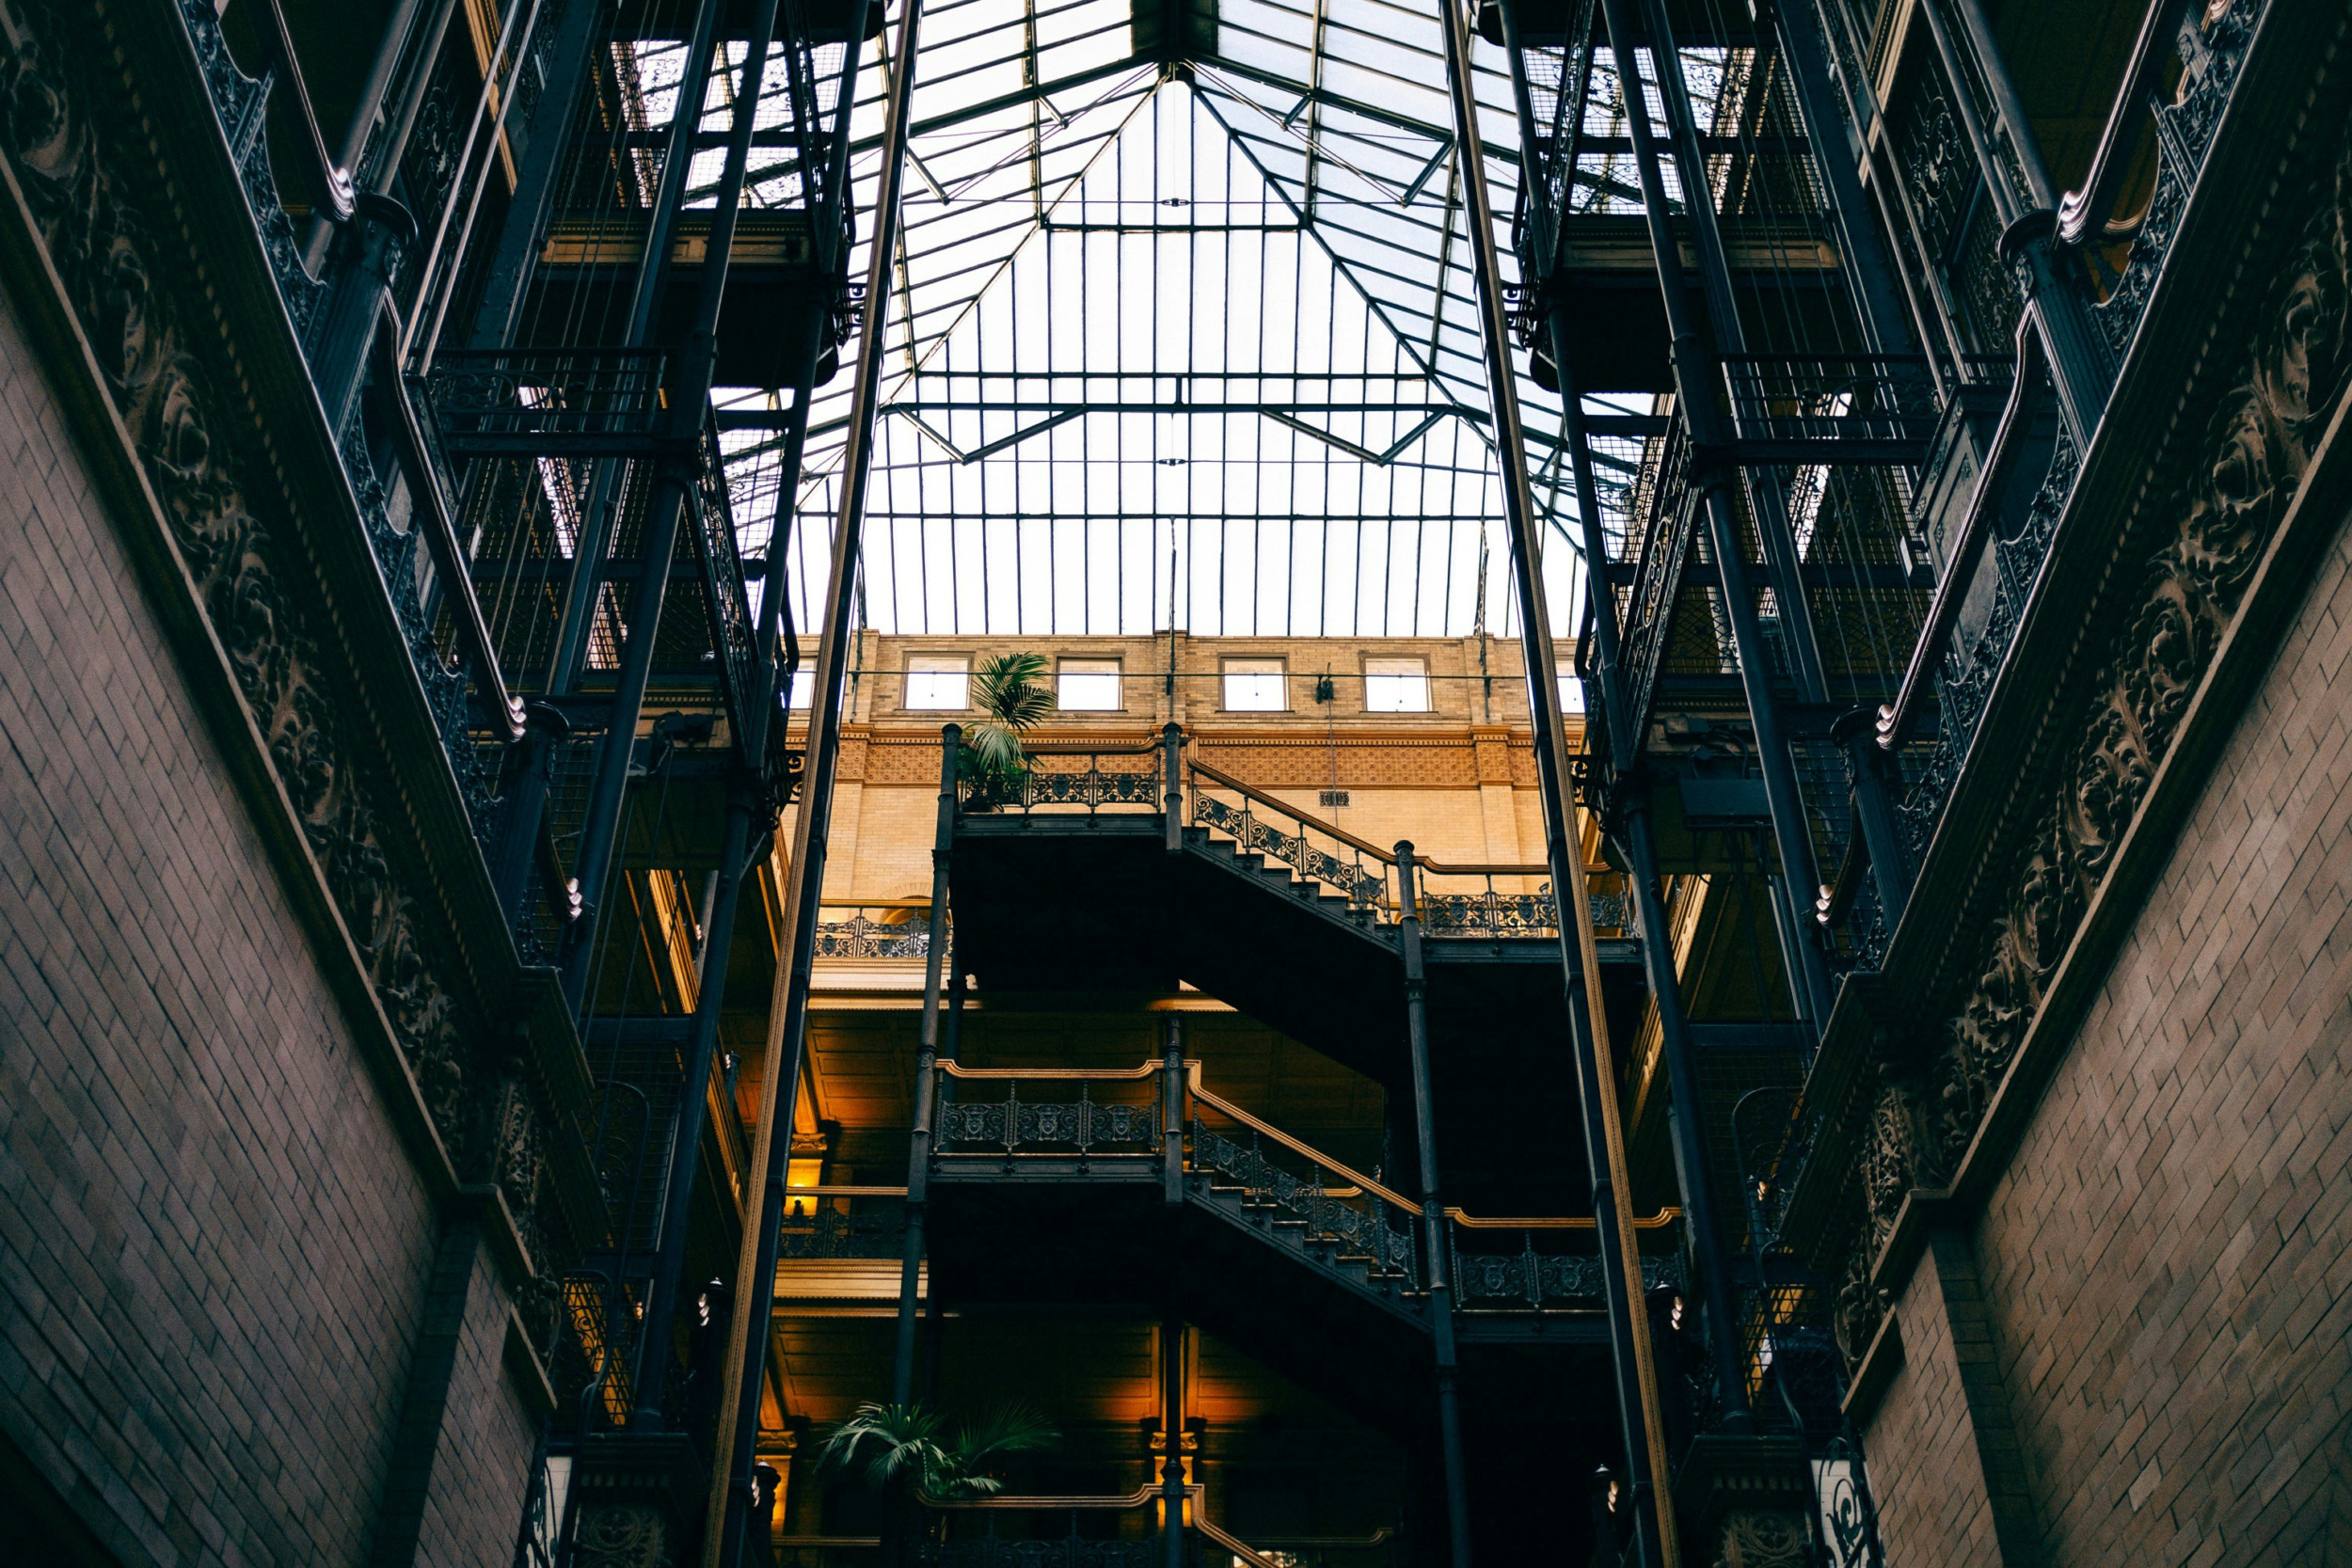 Das Bradbury Building ist das perfekte Fotomotiv und ein Geheimtipp unter den Los Angeles Sehenswürdigkeiten